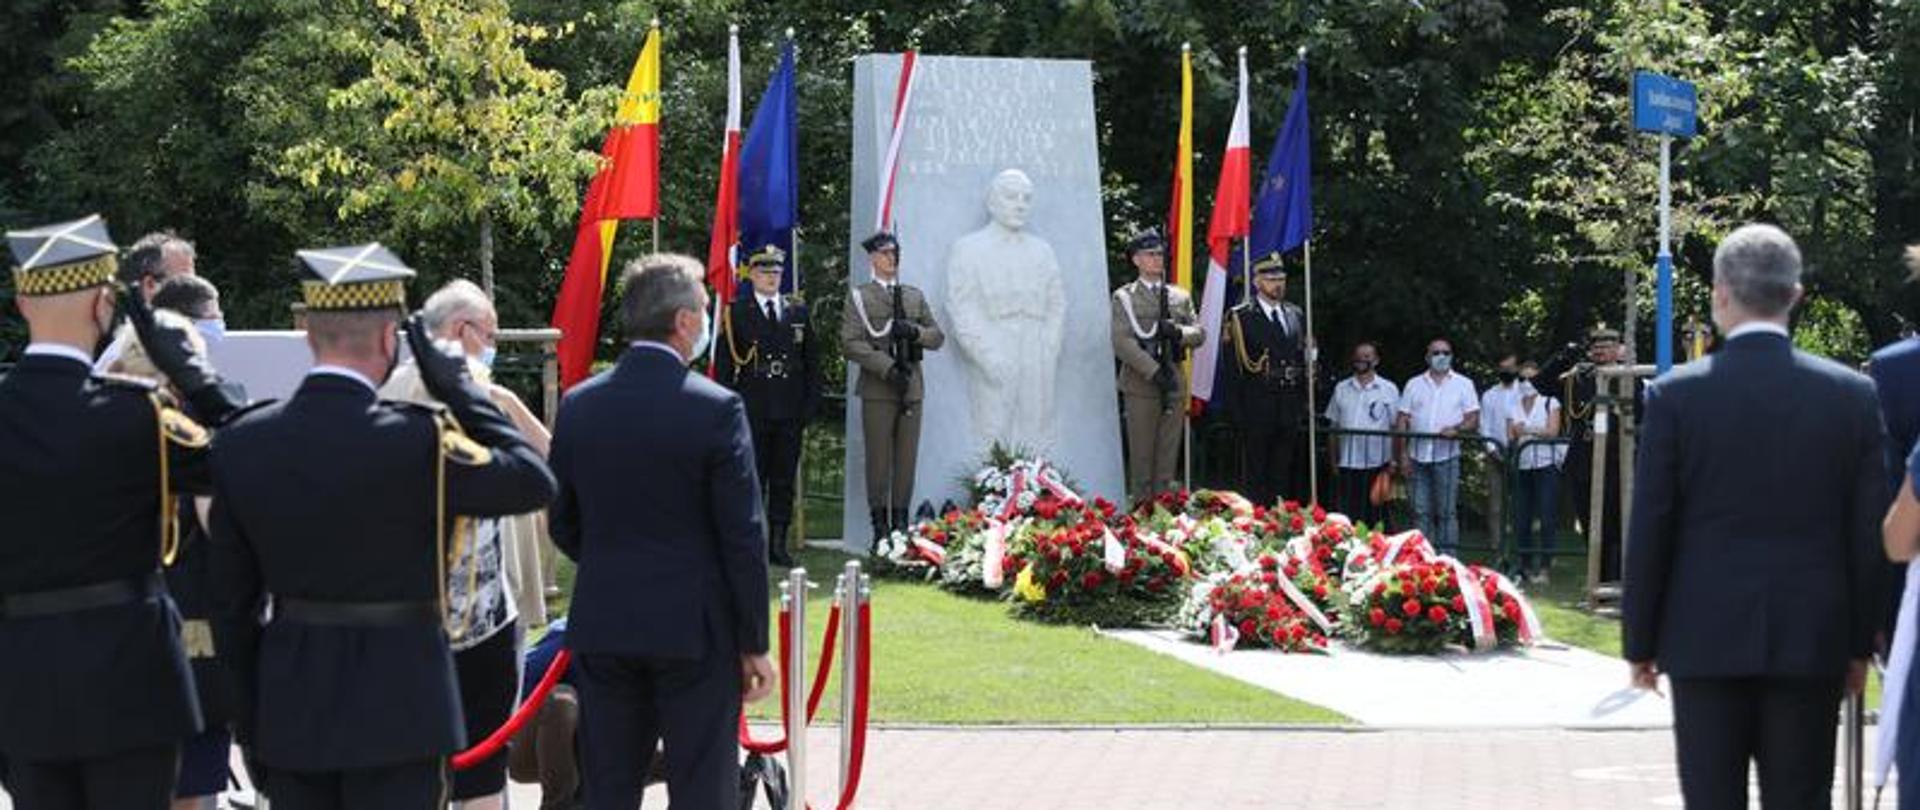 Pomnik stanął na Powiślu, przy skwerze imienia bohatera – u zbiegu ulic Karowej i Browarnej (fot. Rafał Zambrzycki/Kancelaria Sejmu)